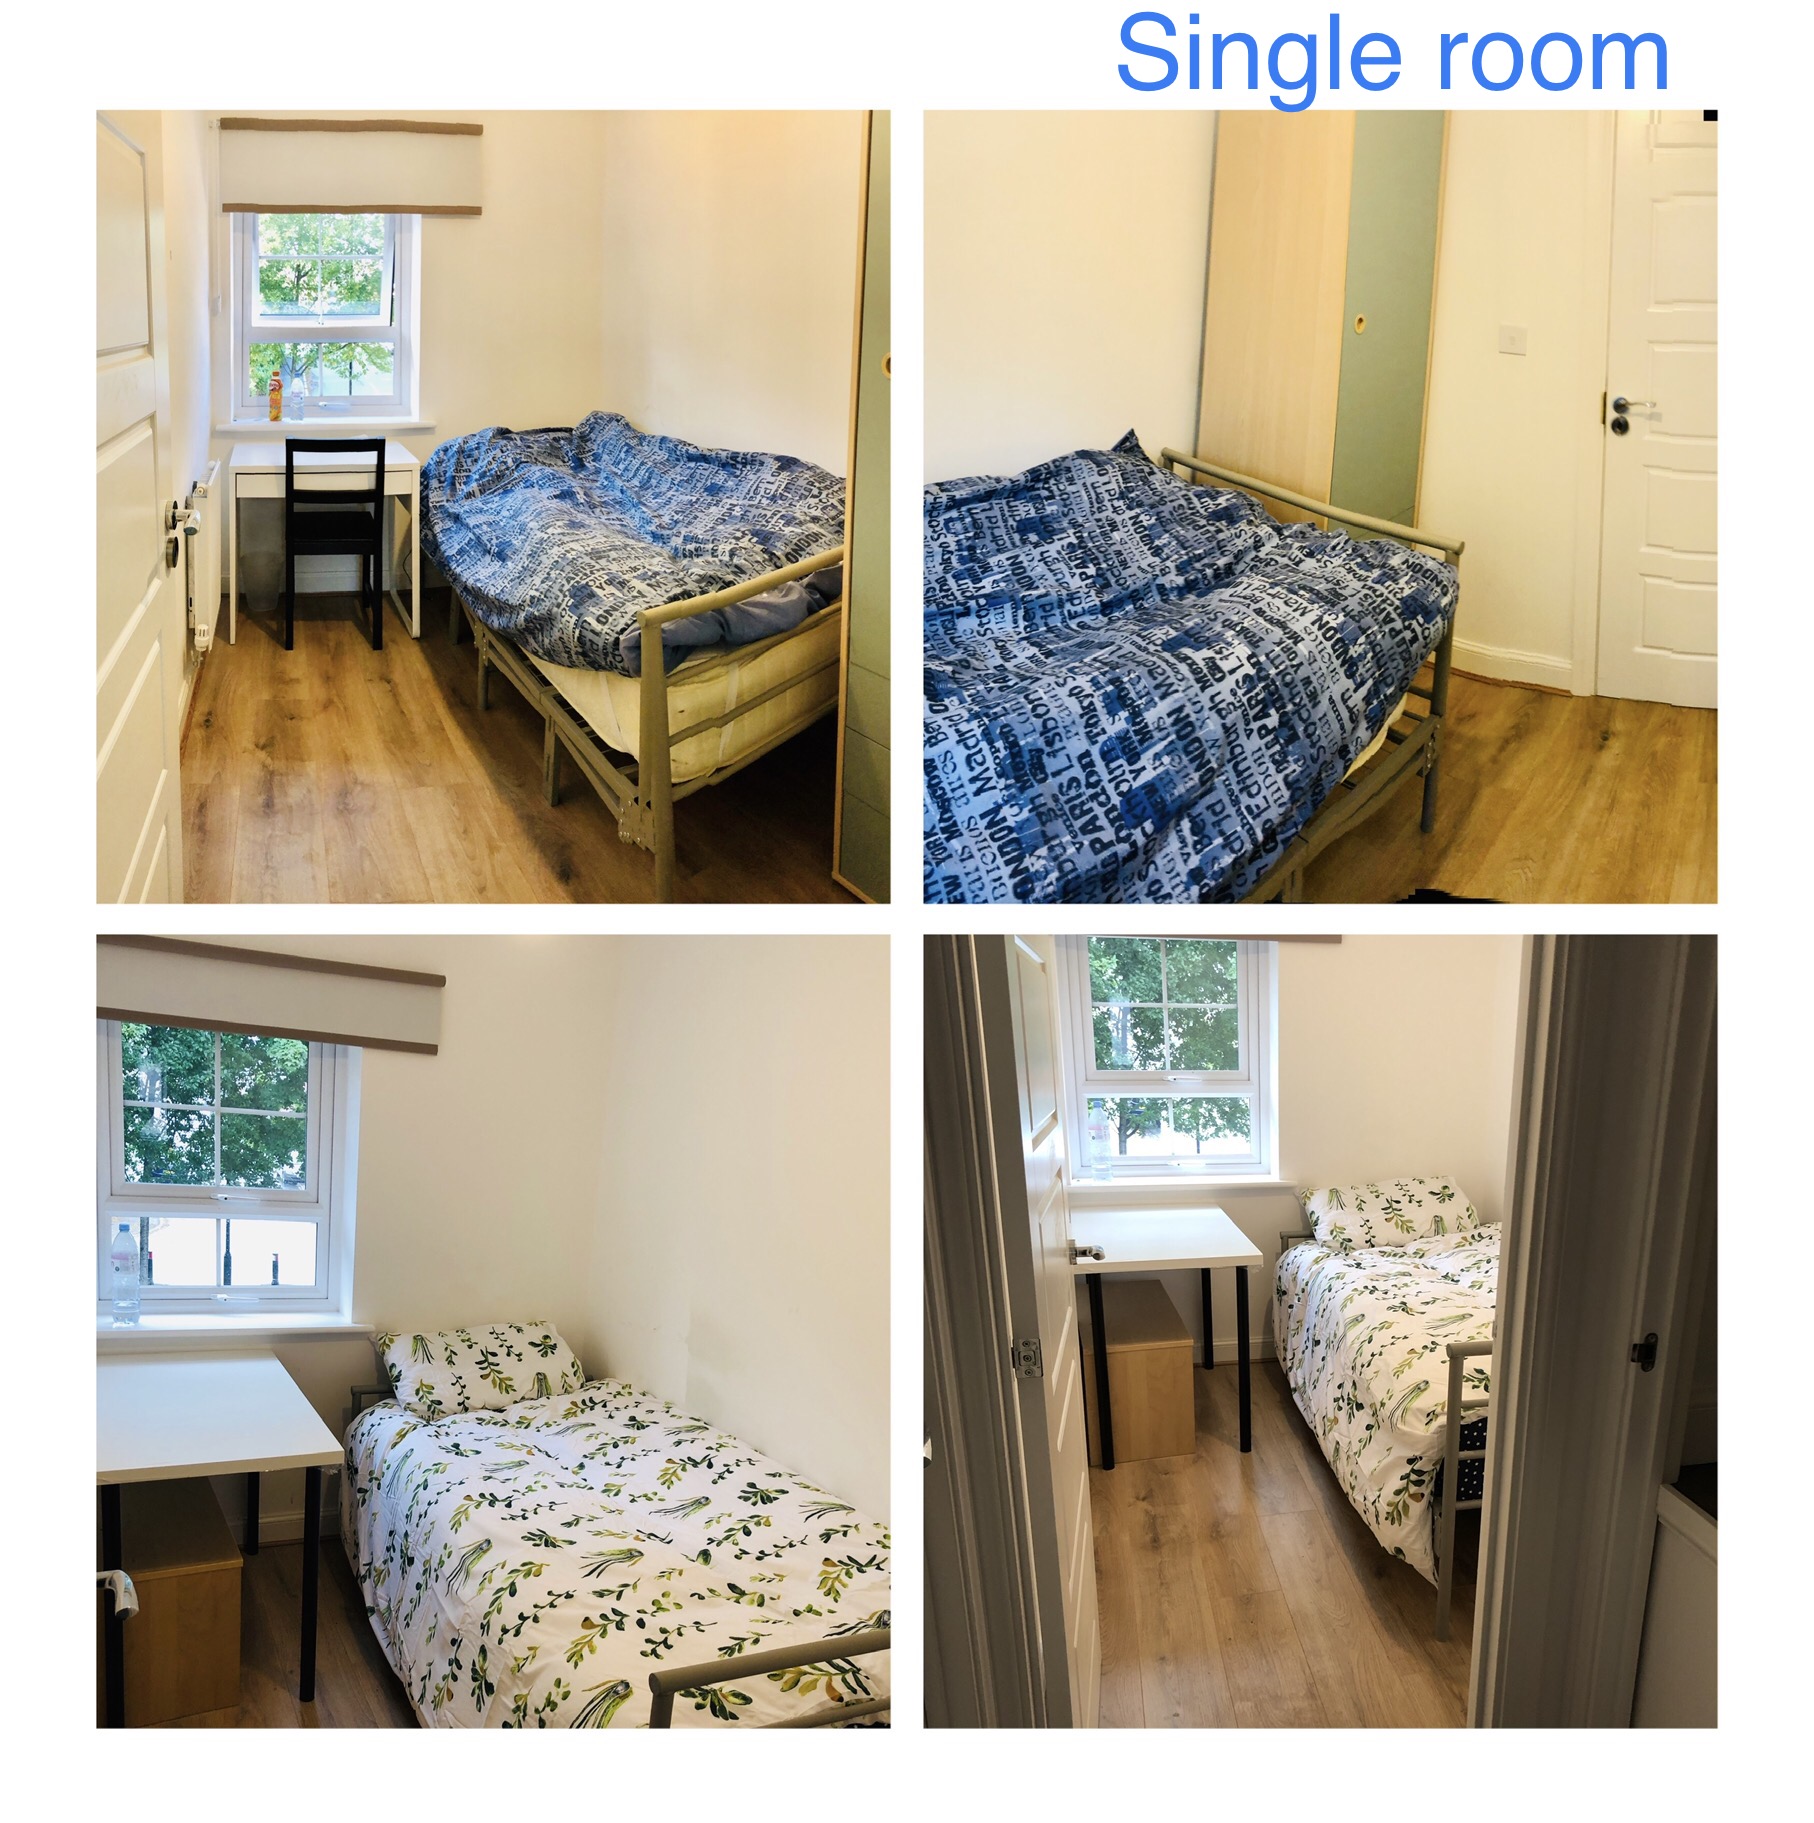  Single Room